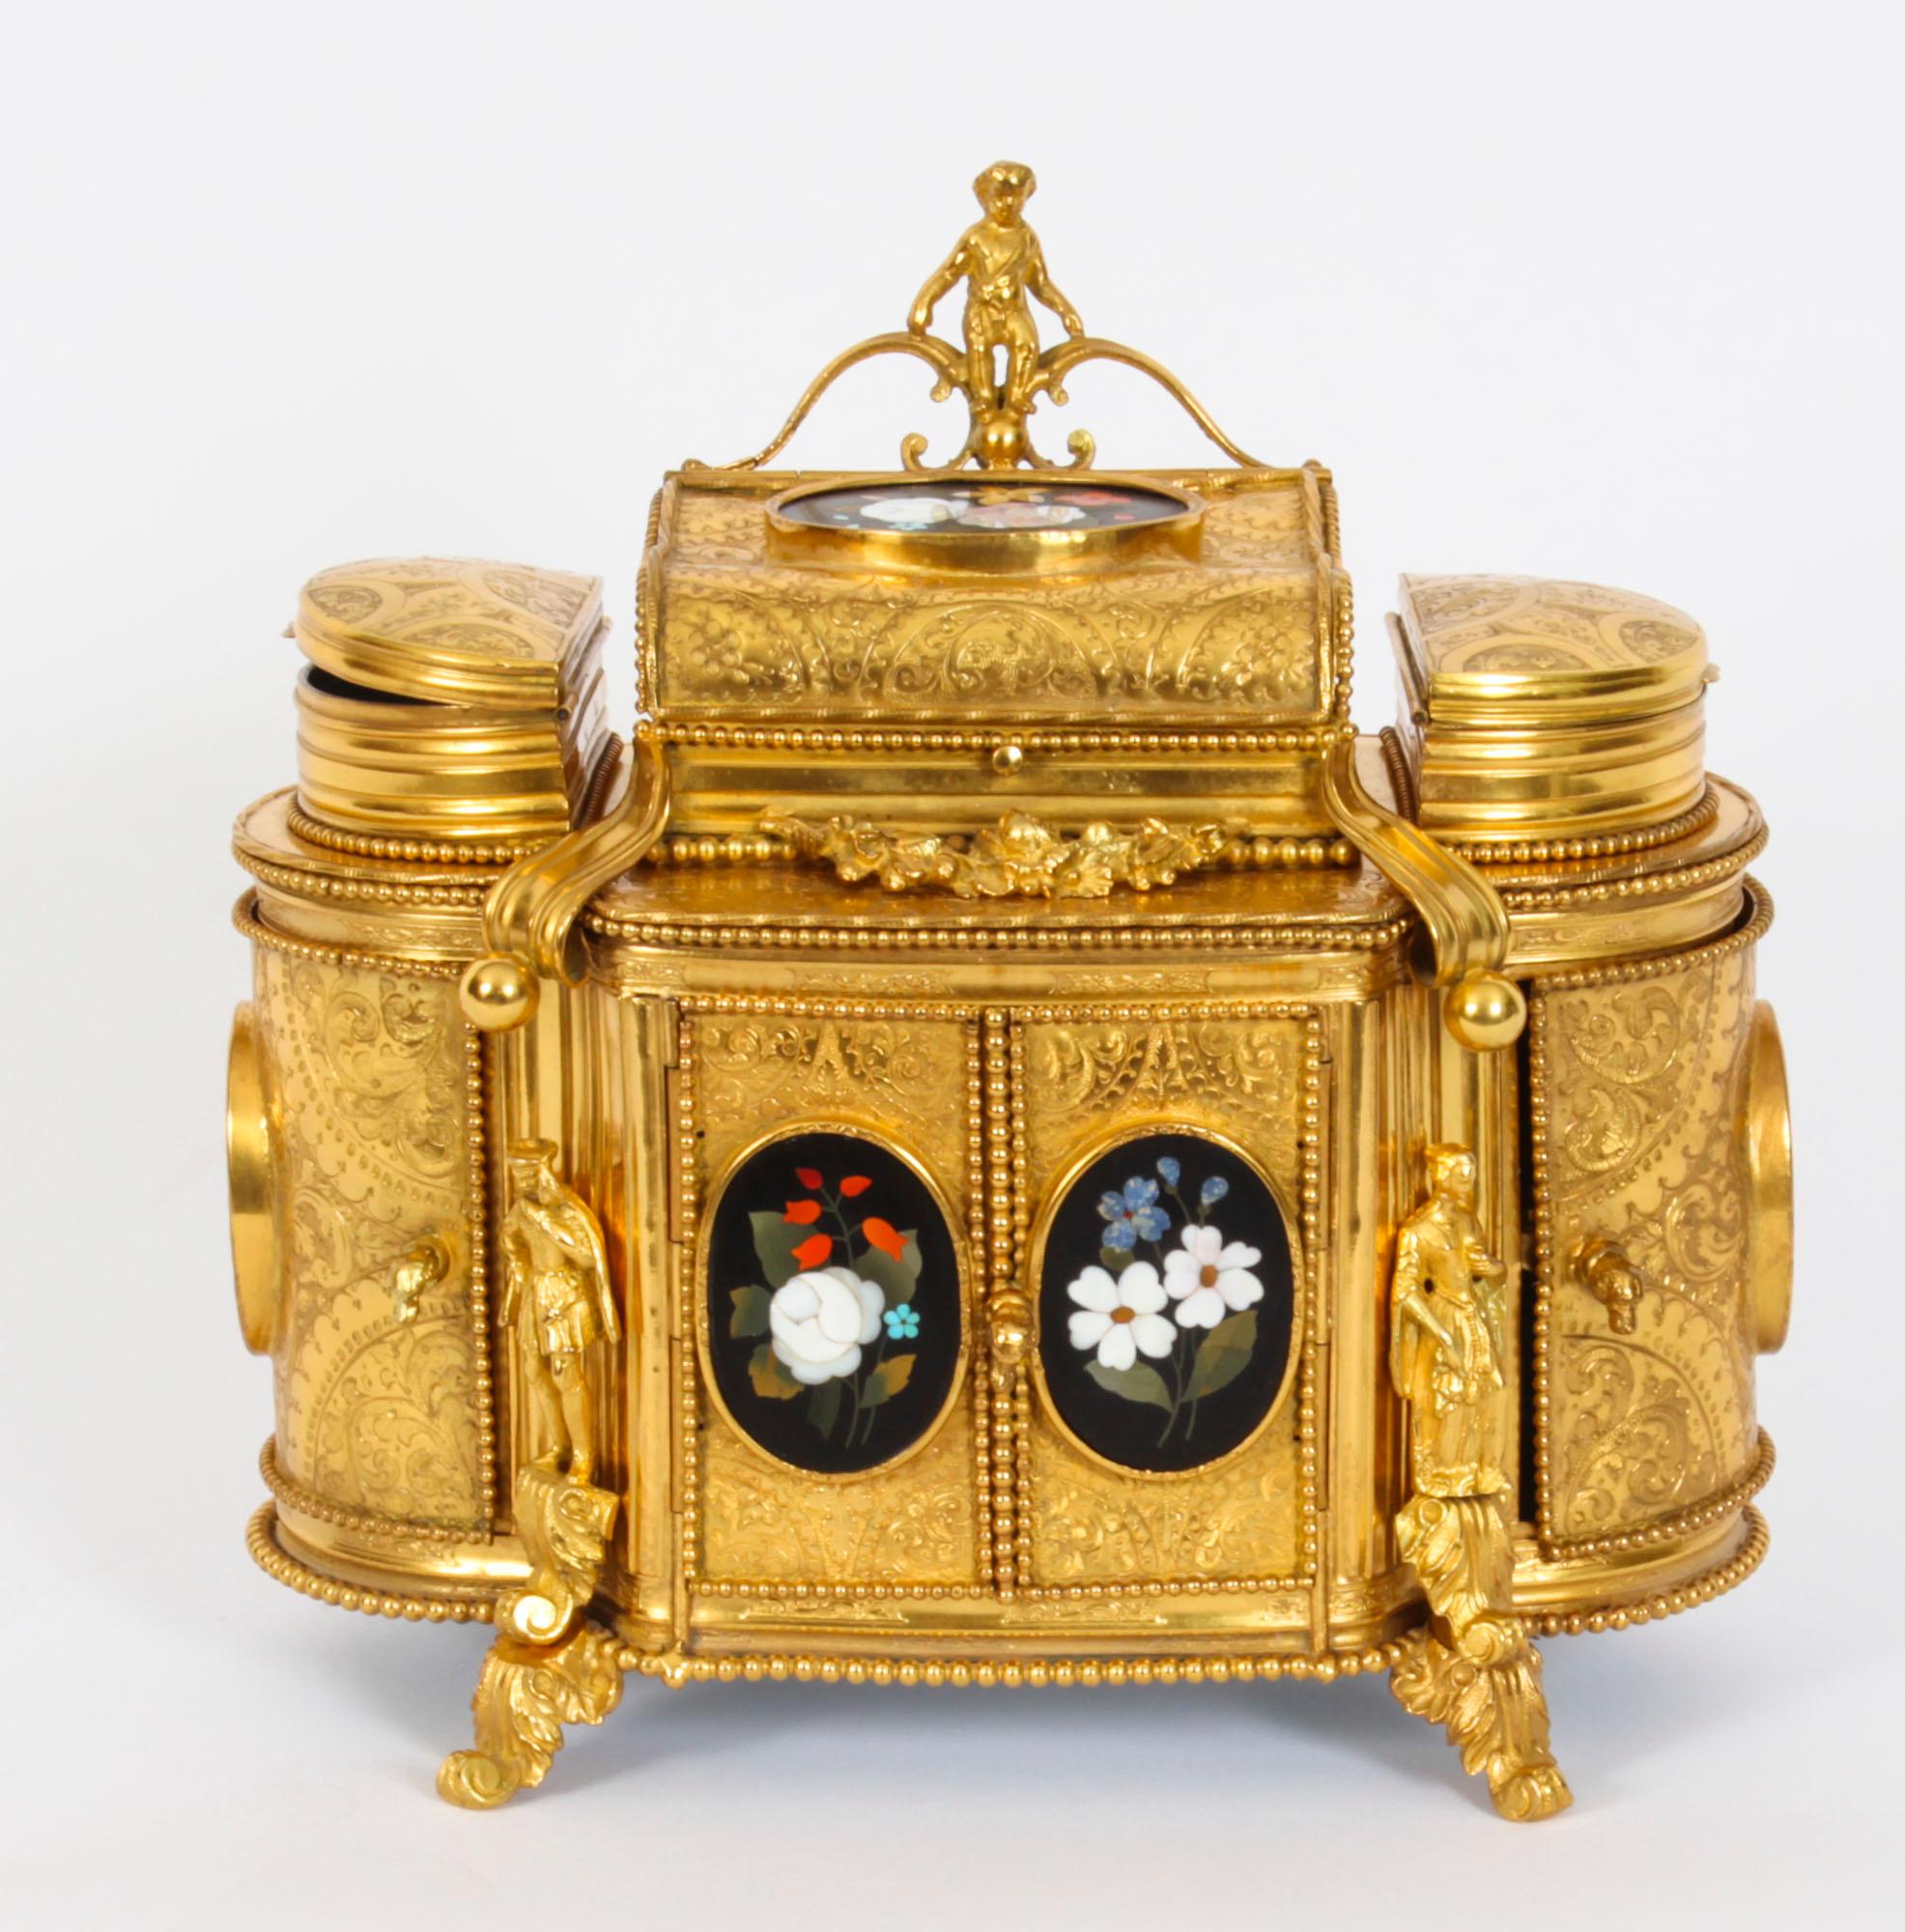 Il s'agit d'un fabuleux meuble à bijoux français ancien monté en bronze doré gravé et en Pietra Dura, datant d'environ 1860.

Le cercueil se présente sous la forme d'une armoire, avec trois compartiments à bijoux aménagés sur le dessus,  le